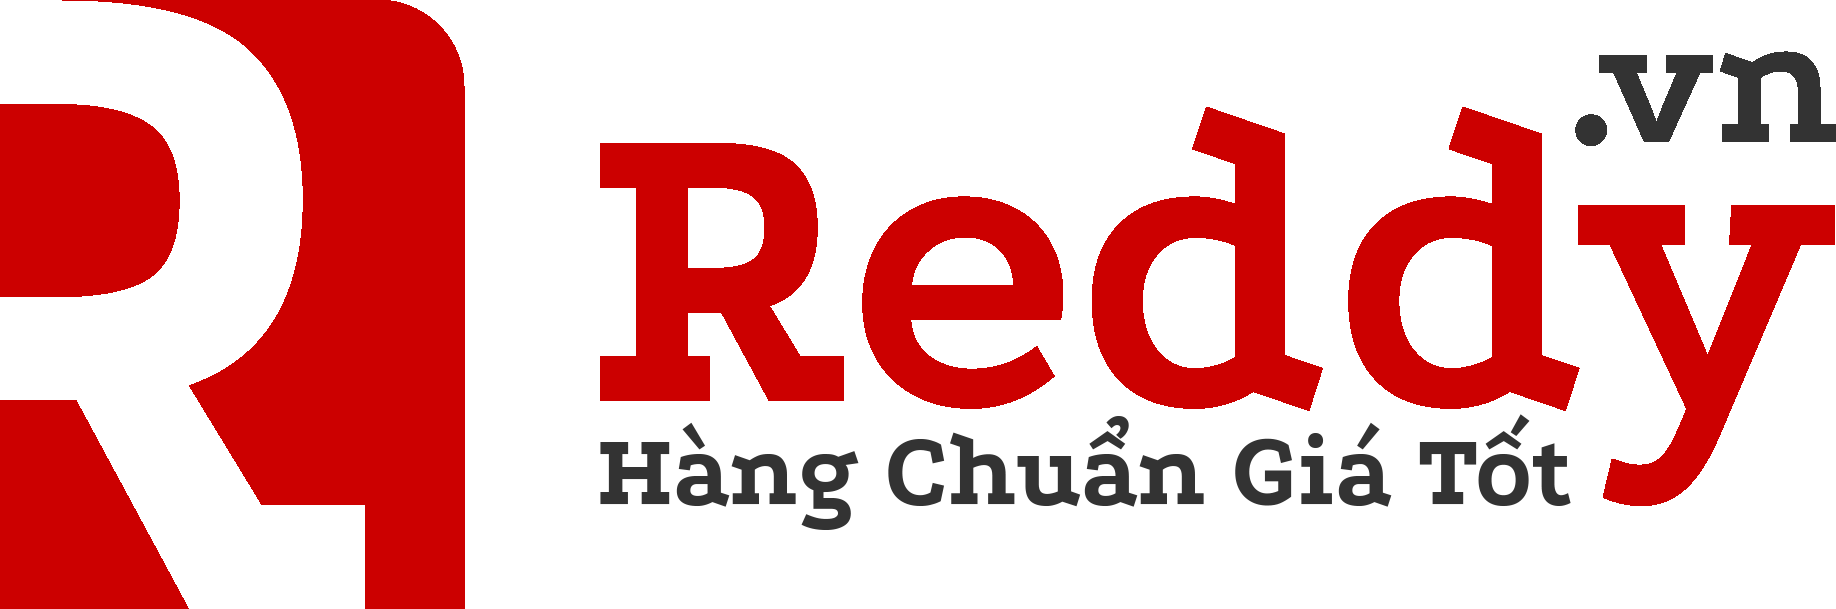 Reddy™ - Mua Hàng Chuẩn Giá Tốt, Ship Nhanh